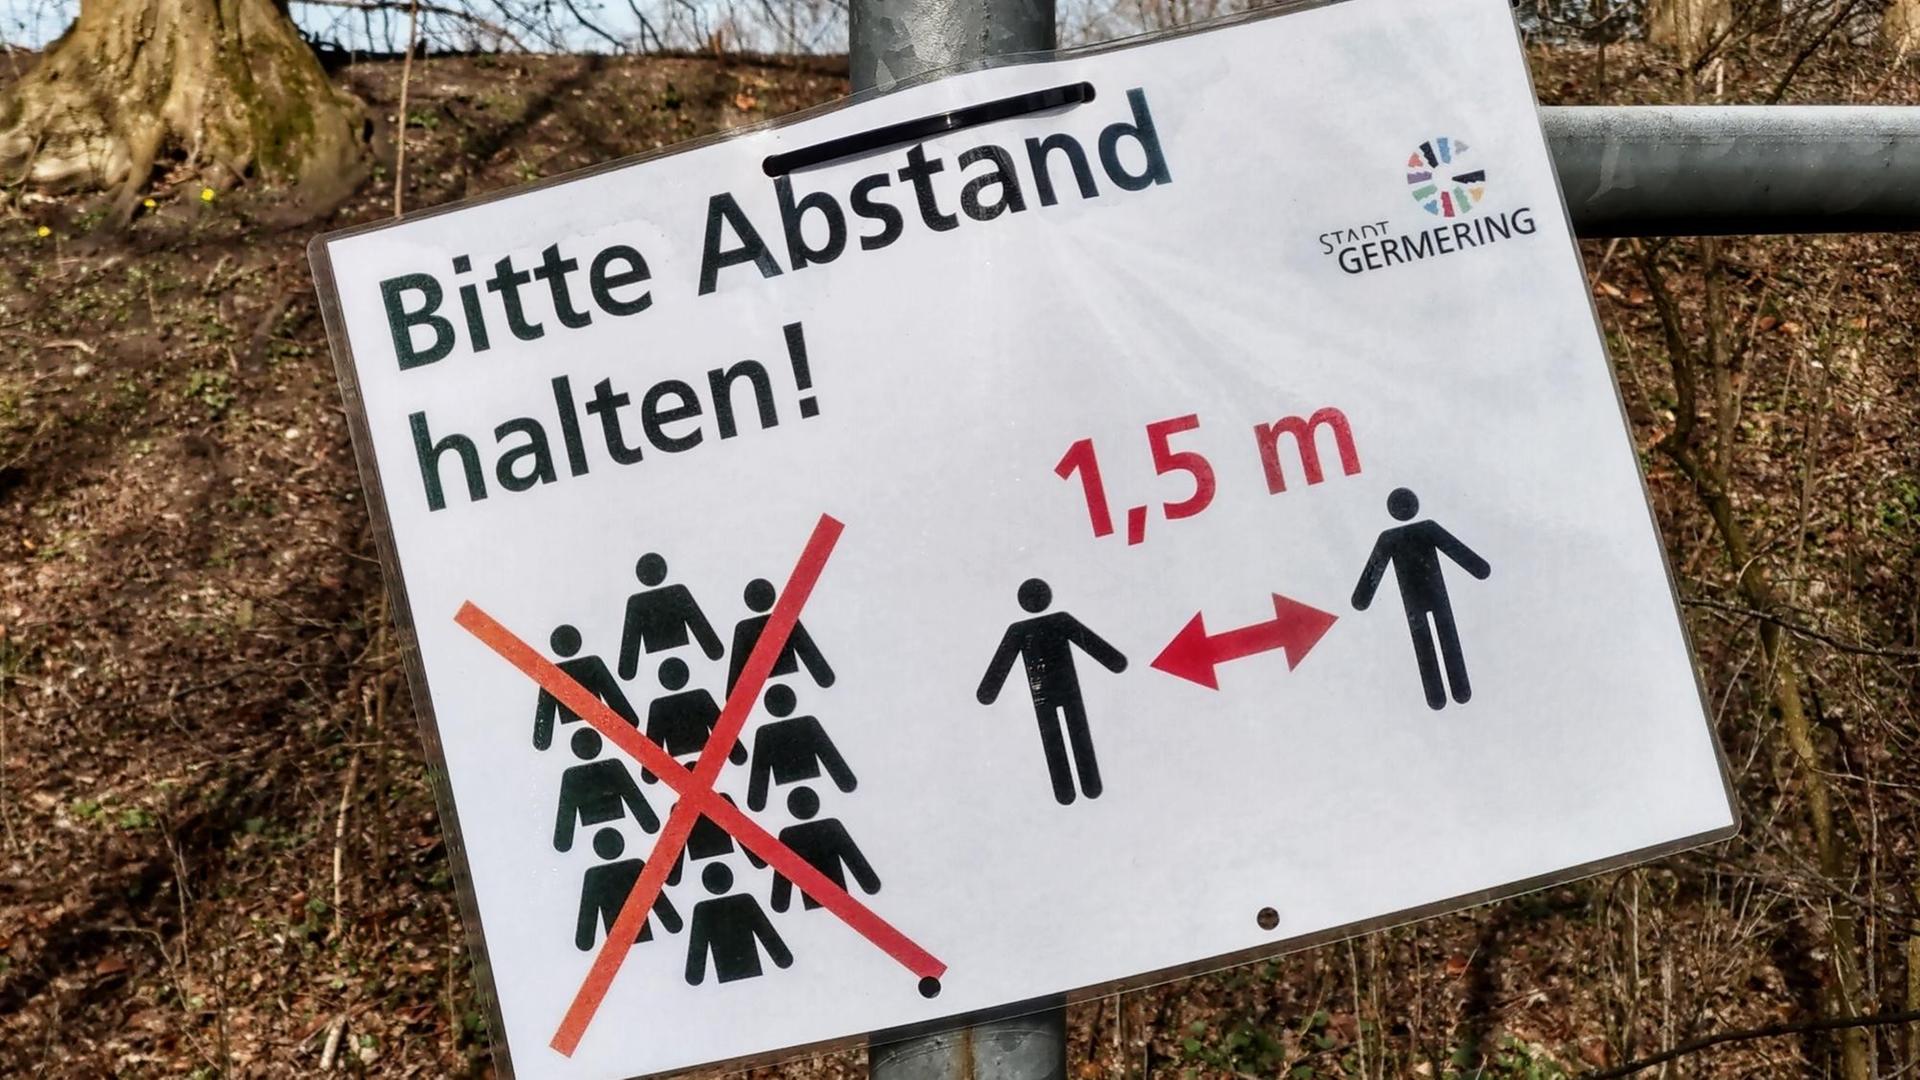 Auf einem an einem Laternenpfahl angebrachten Zettel steht: "Bitte Abstand halten". DIe Deutschen sind angewiesen in der Öffentlichkeit einen Mindestabstand von 1,5 Metern zueinander zu halten.